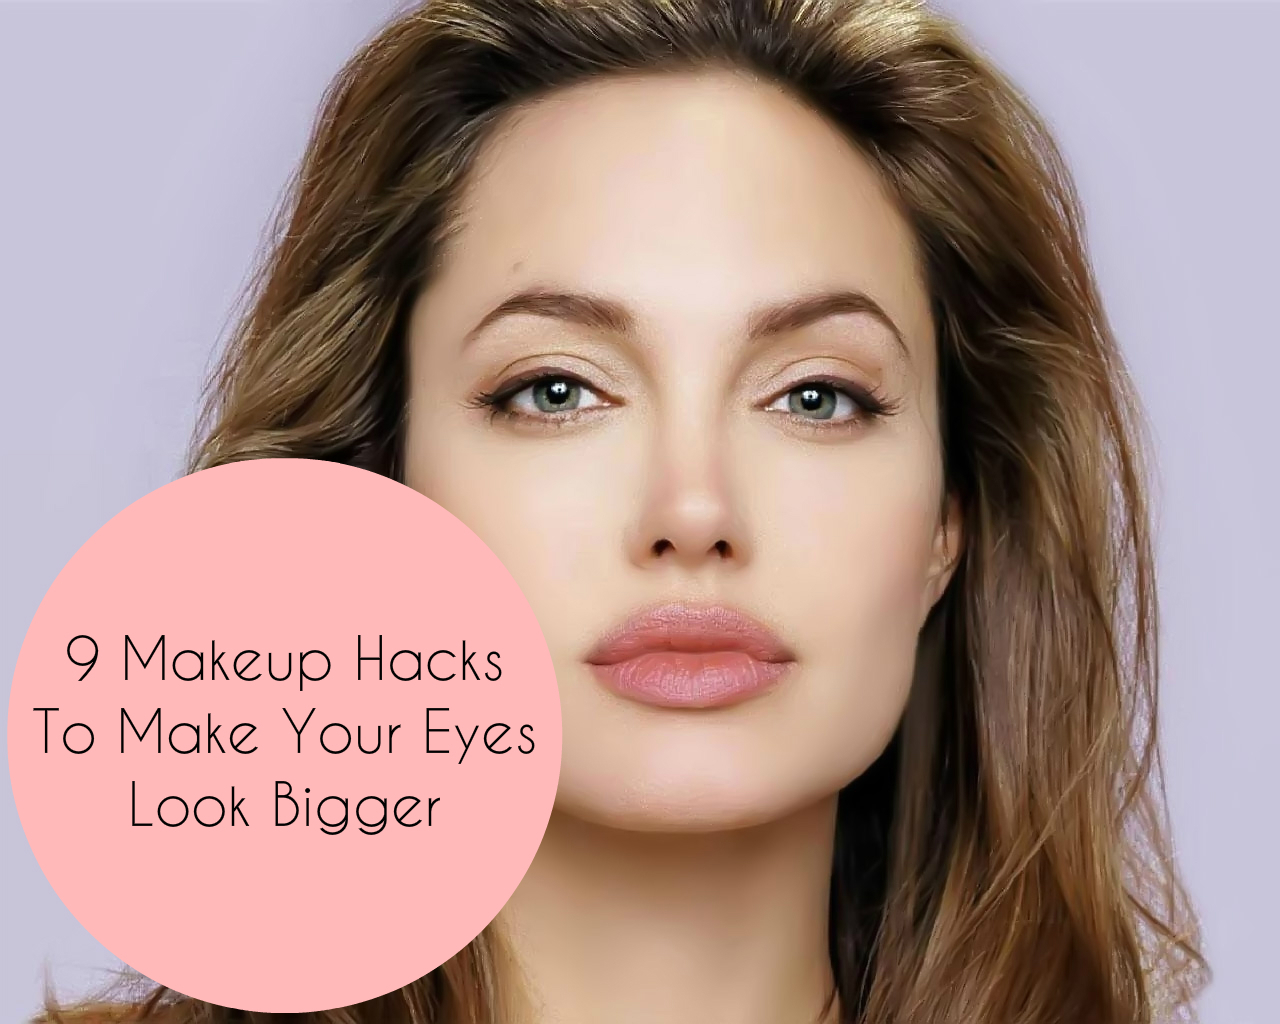 Eye Makeup To Make Eyes Look Bigger 9 Makeup Hacks To Make Your Eyes Look Bigger